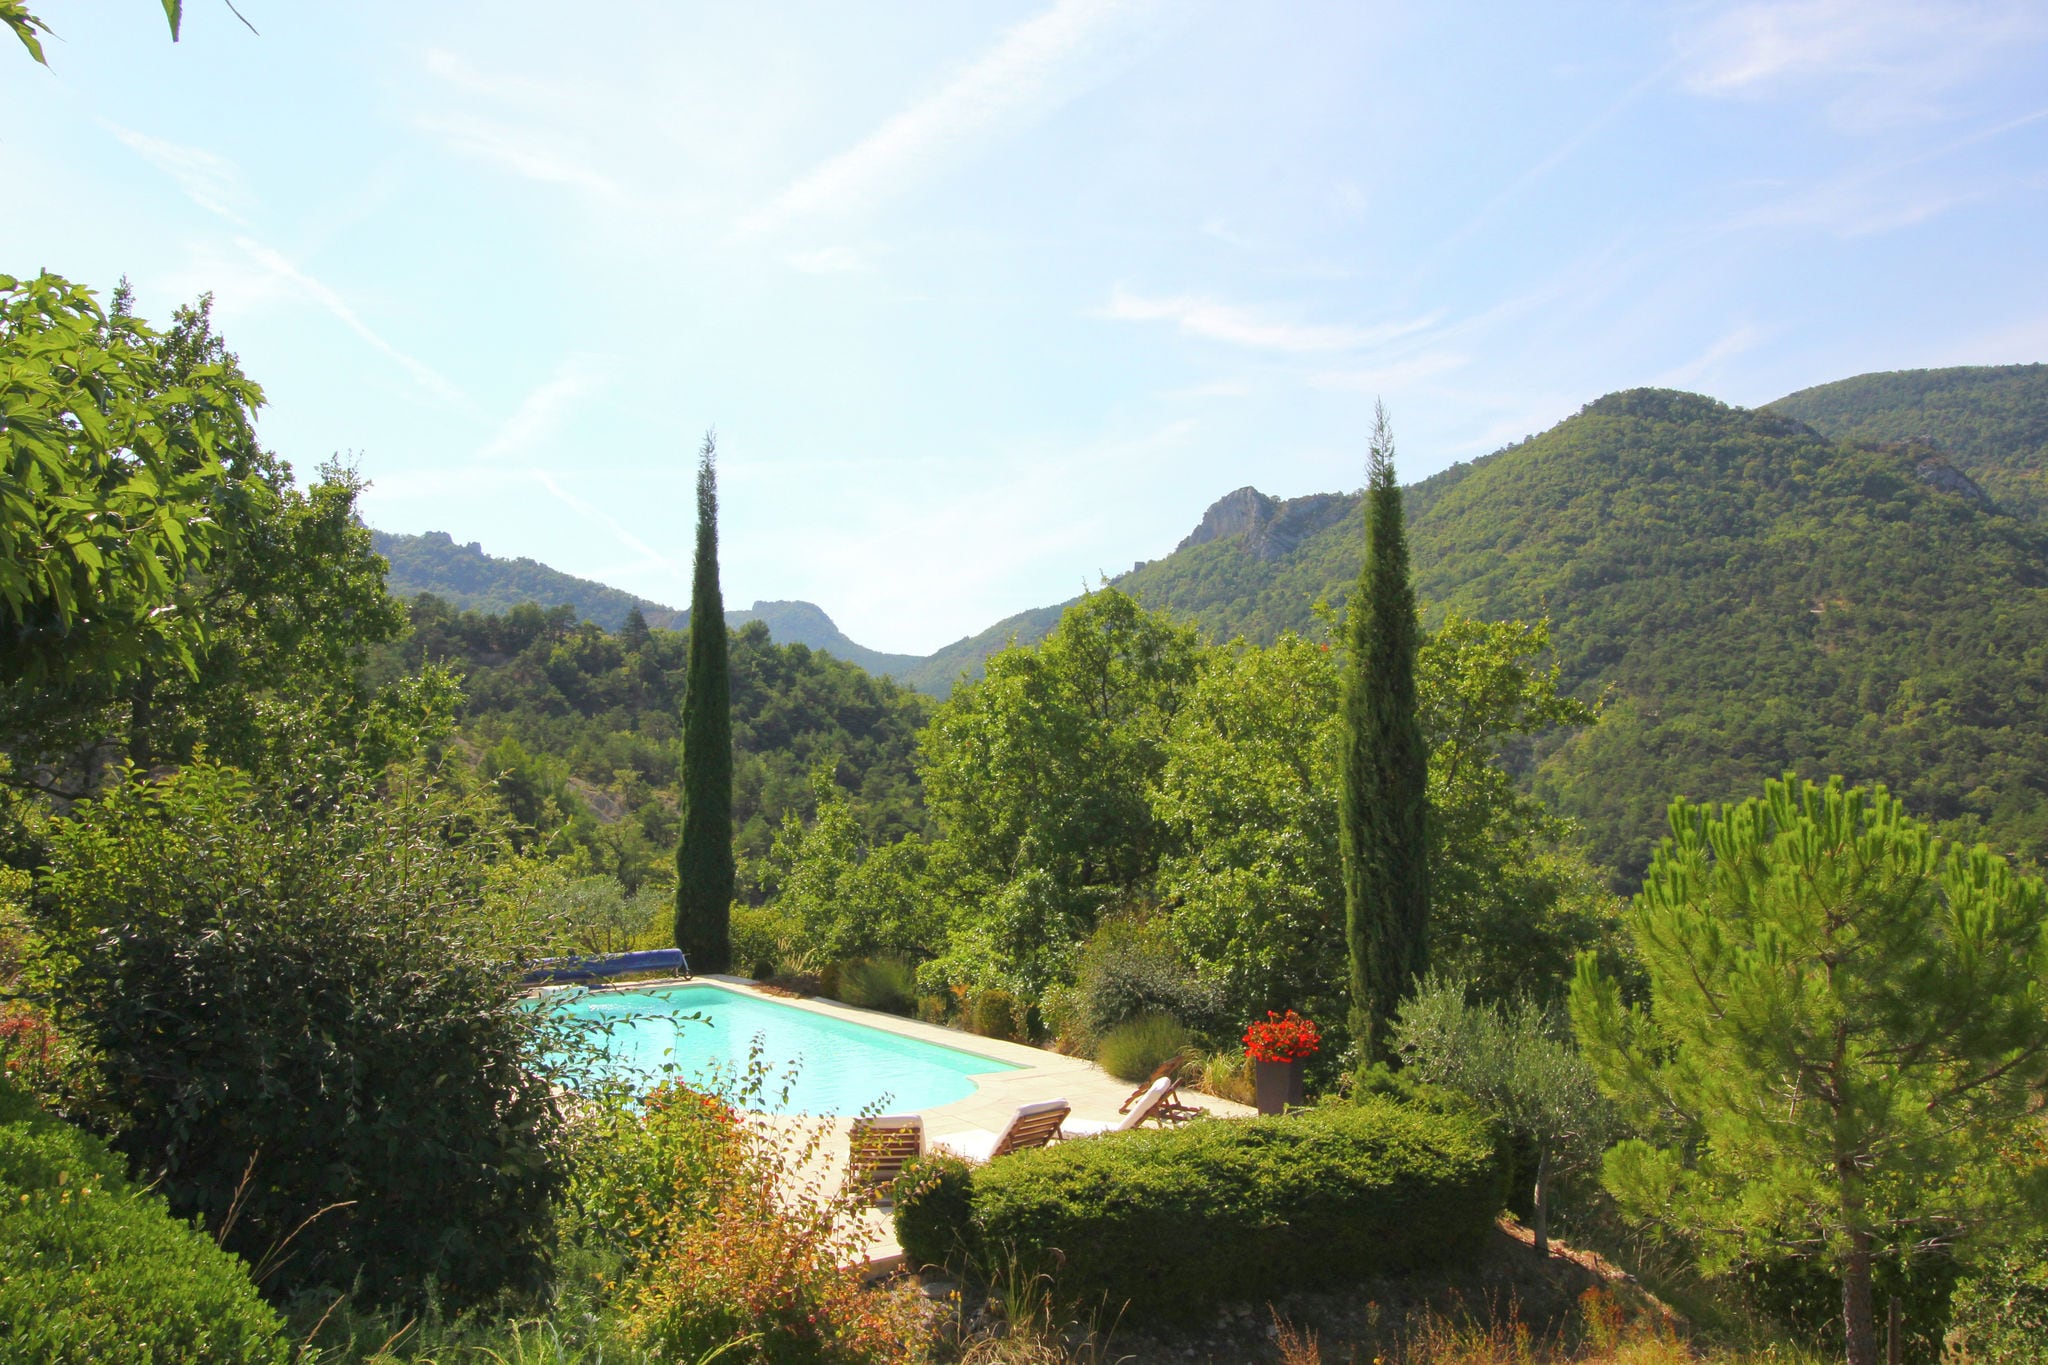 Villa authentique avec piscine à Montaulieu